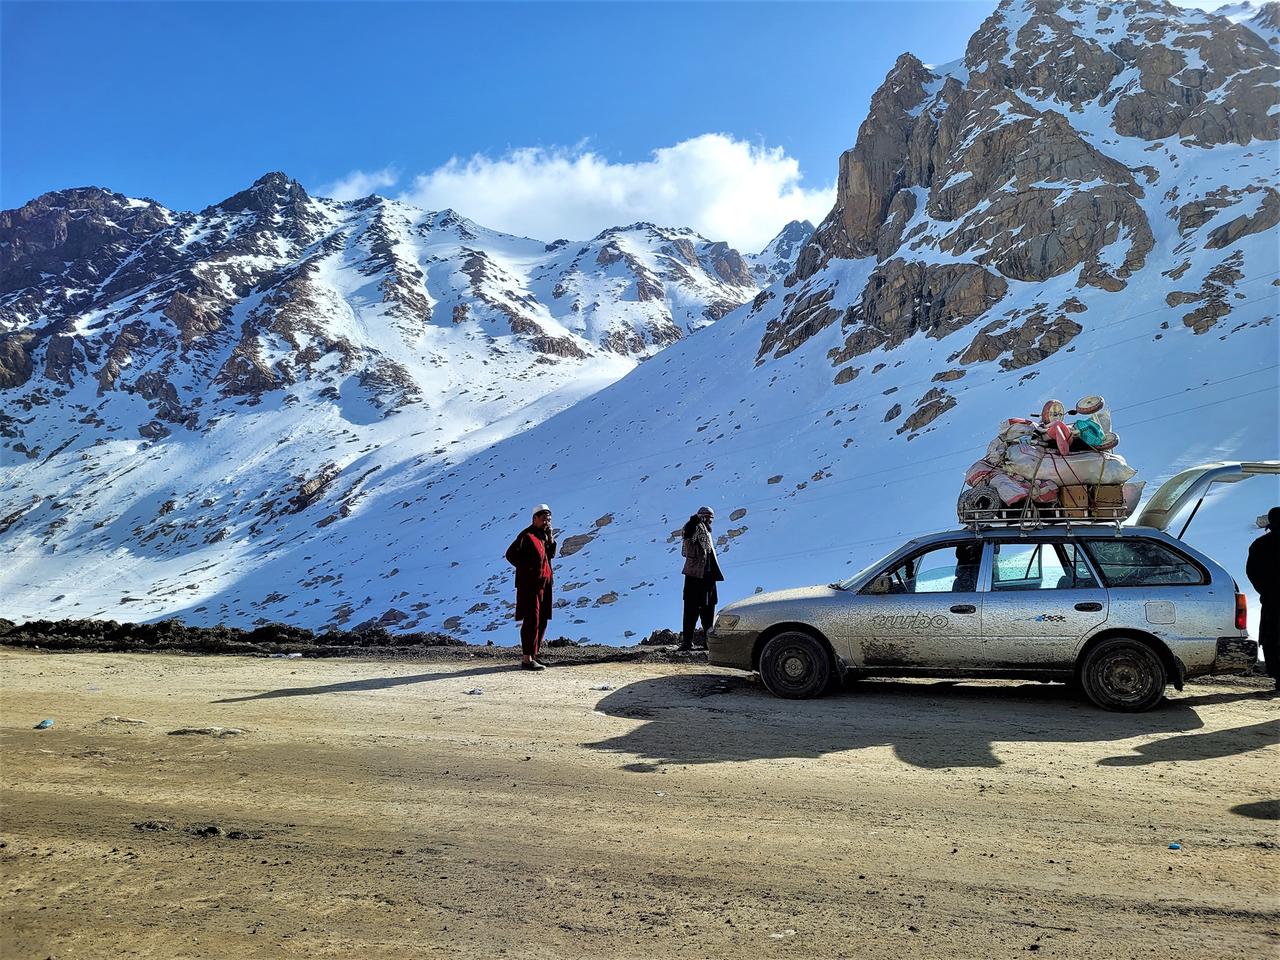 Auf einer Gebirgsstraße im schneebedeckten Hindukusch steht ein altes Auto mit viel Gepäck auf dem Dach, das von Taliban kontrolliert wird.